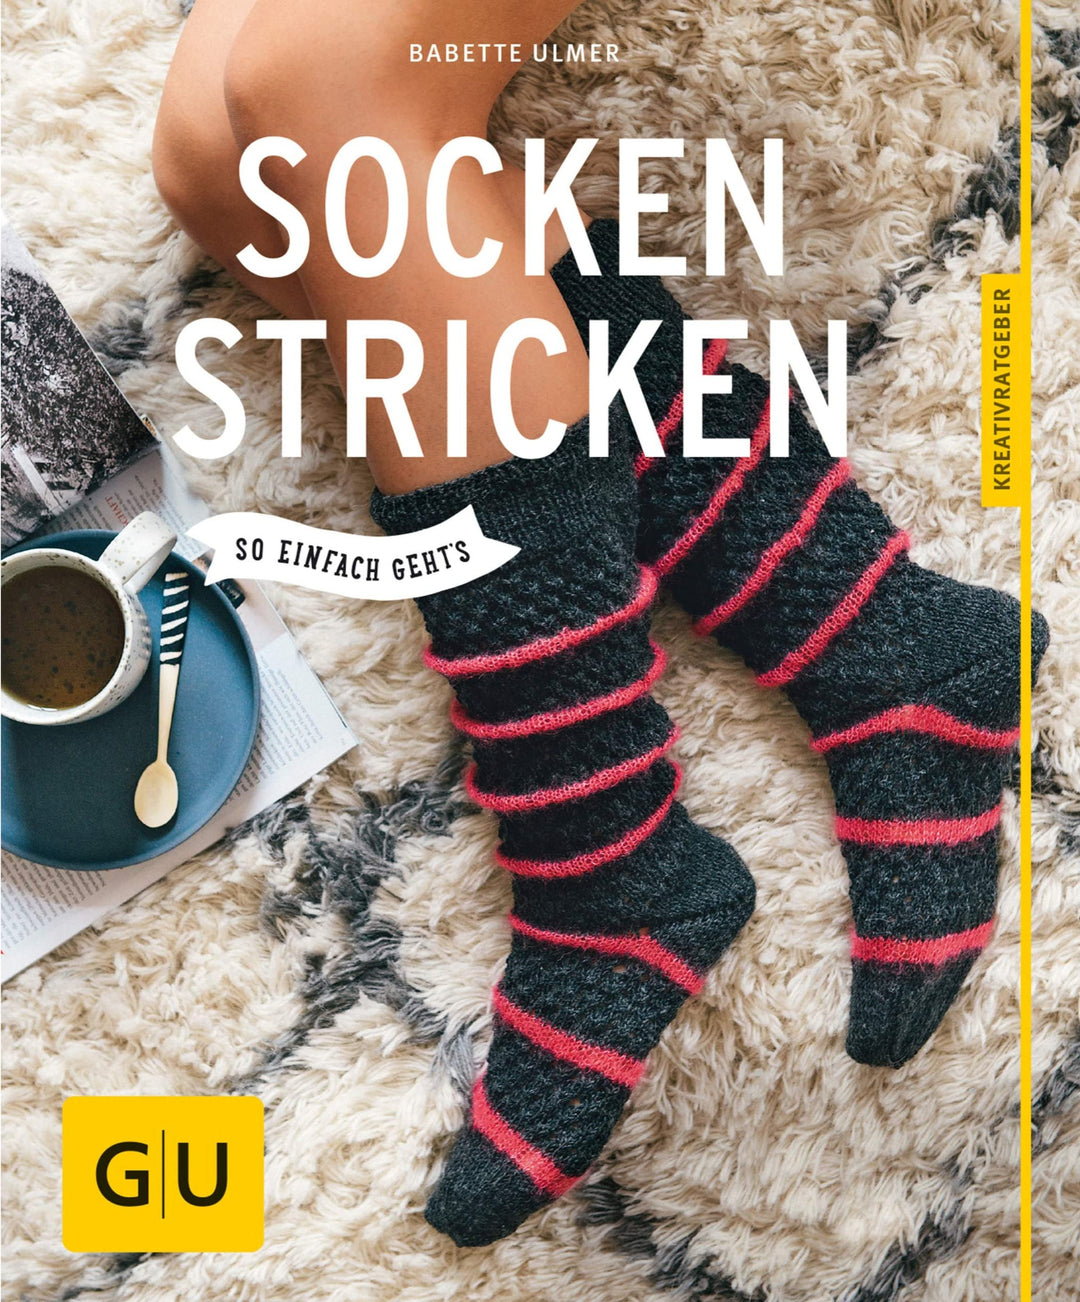 Socken Stricken - so einfach geht's